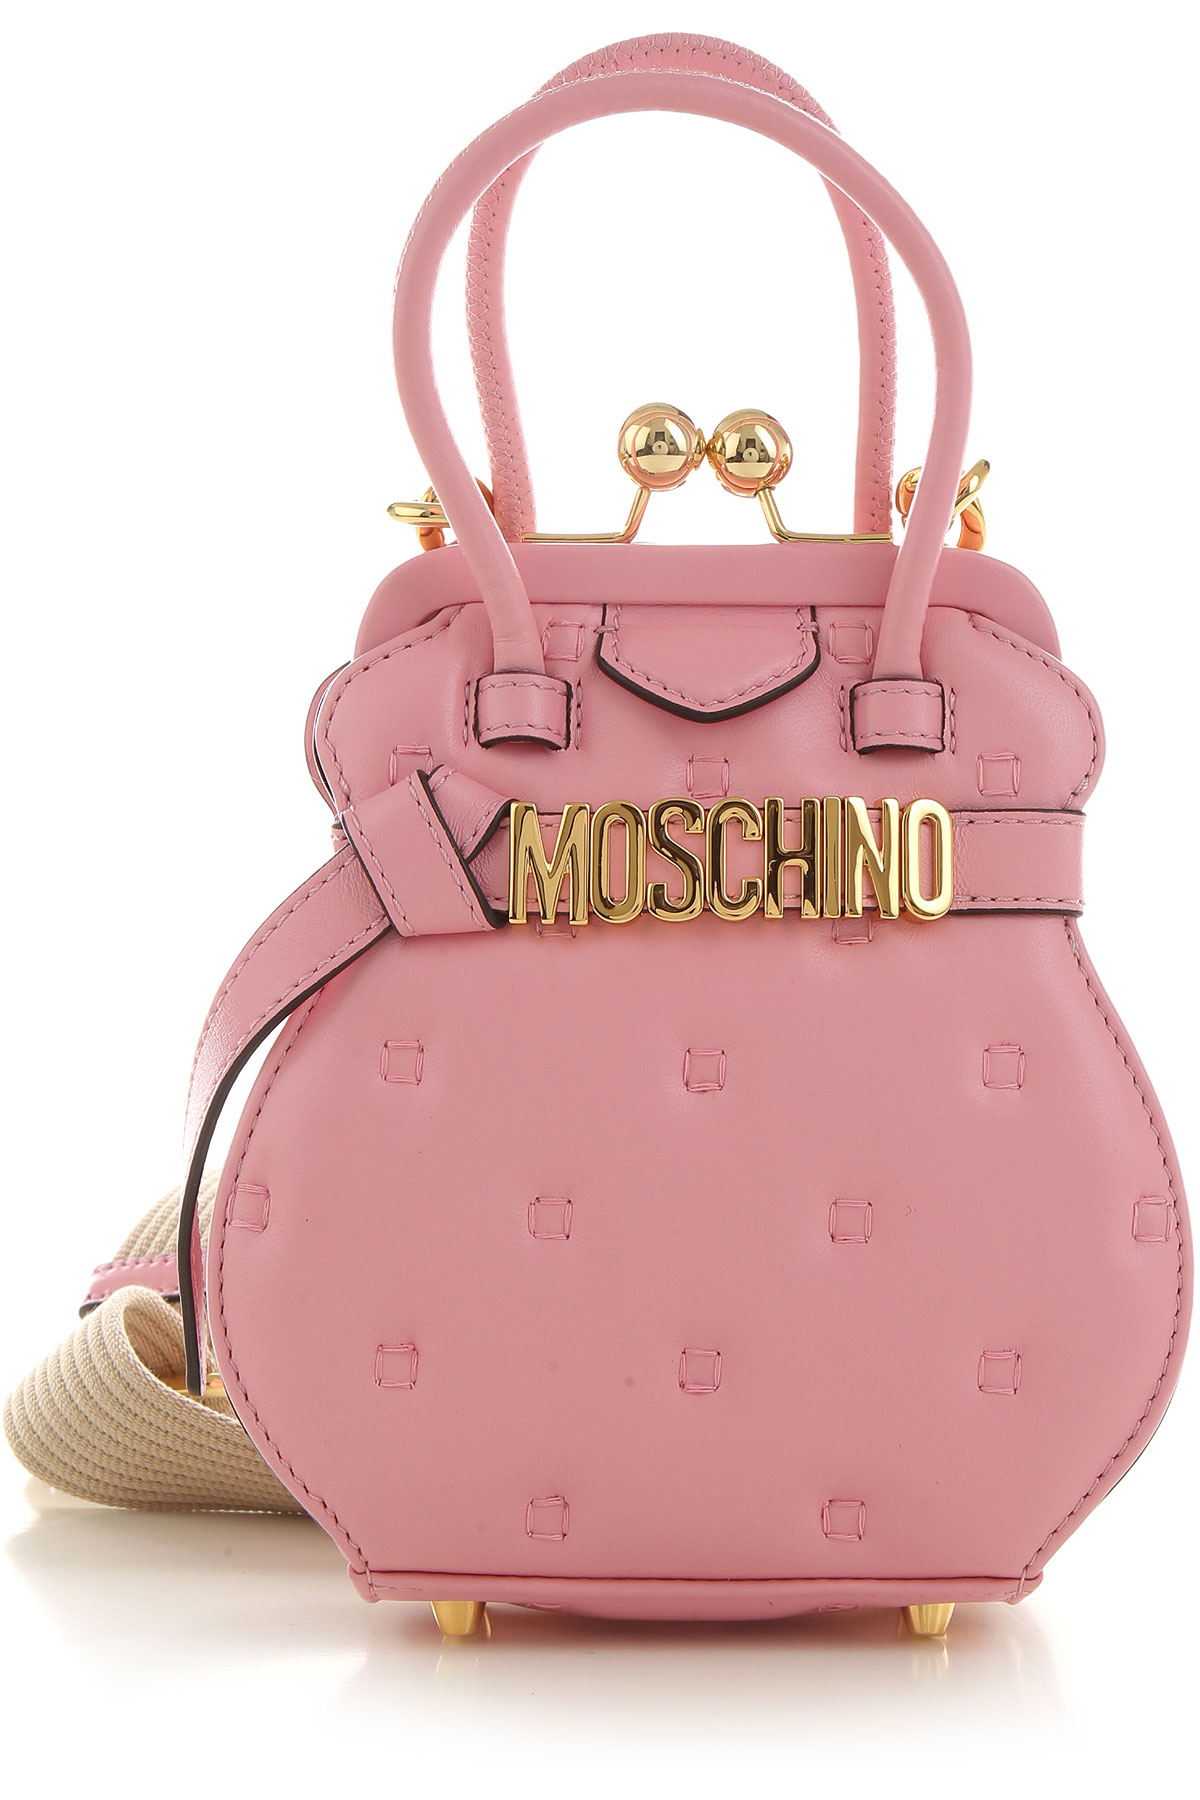 Handbags Moschino, Style code 753280021222